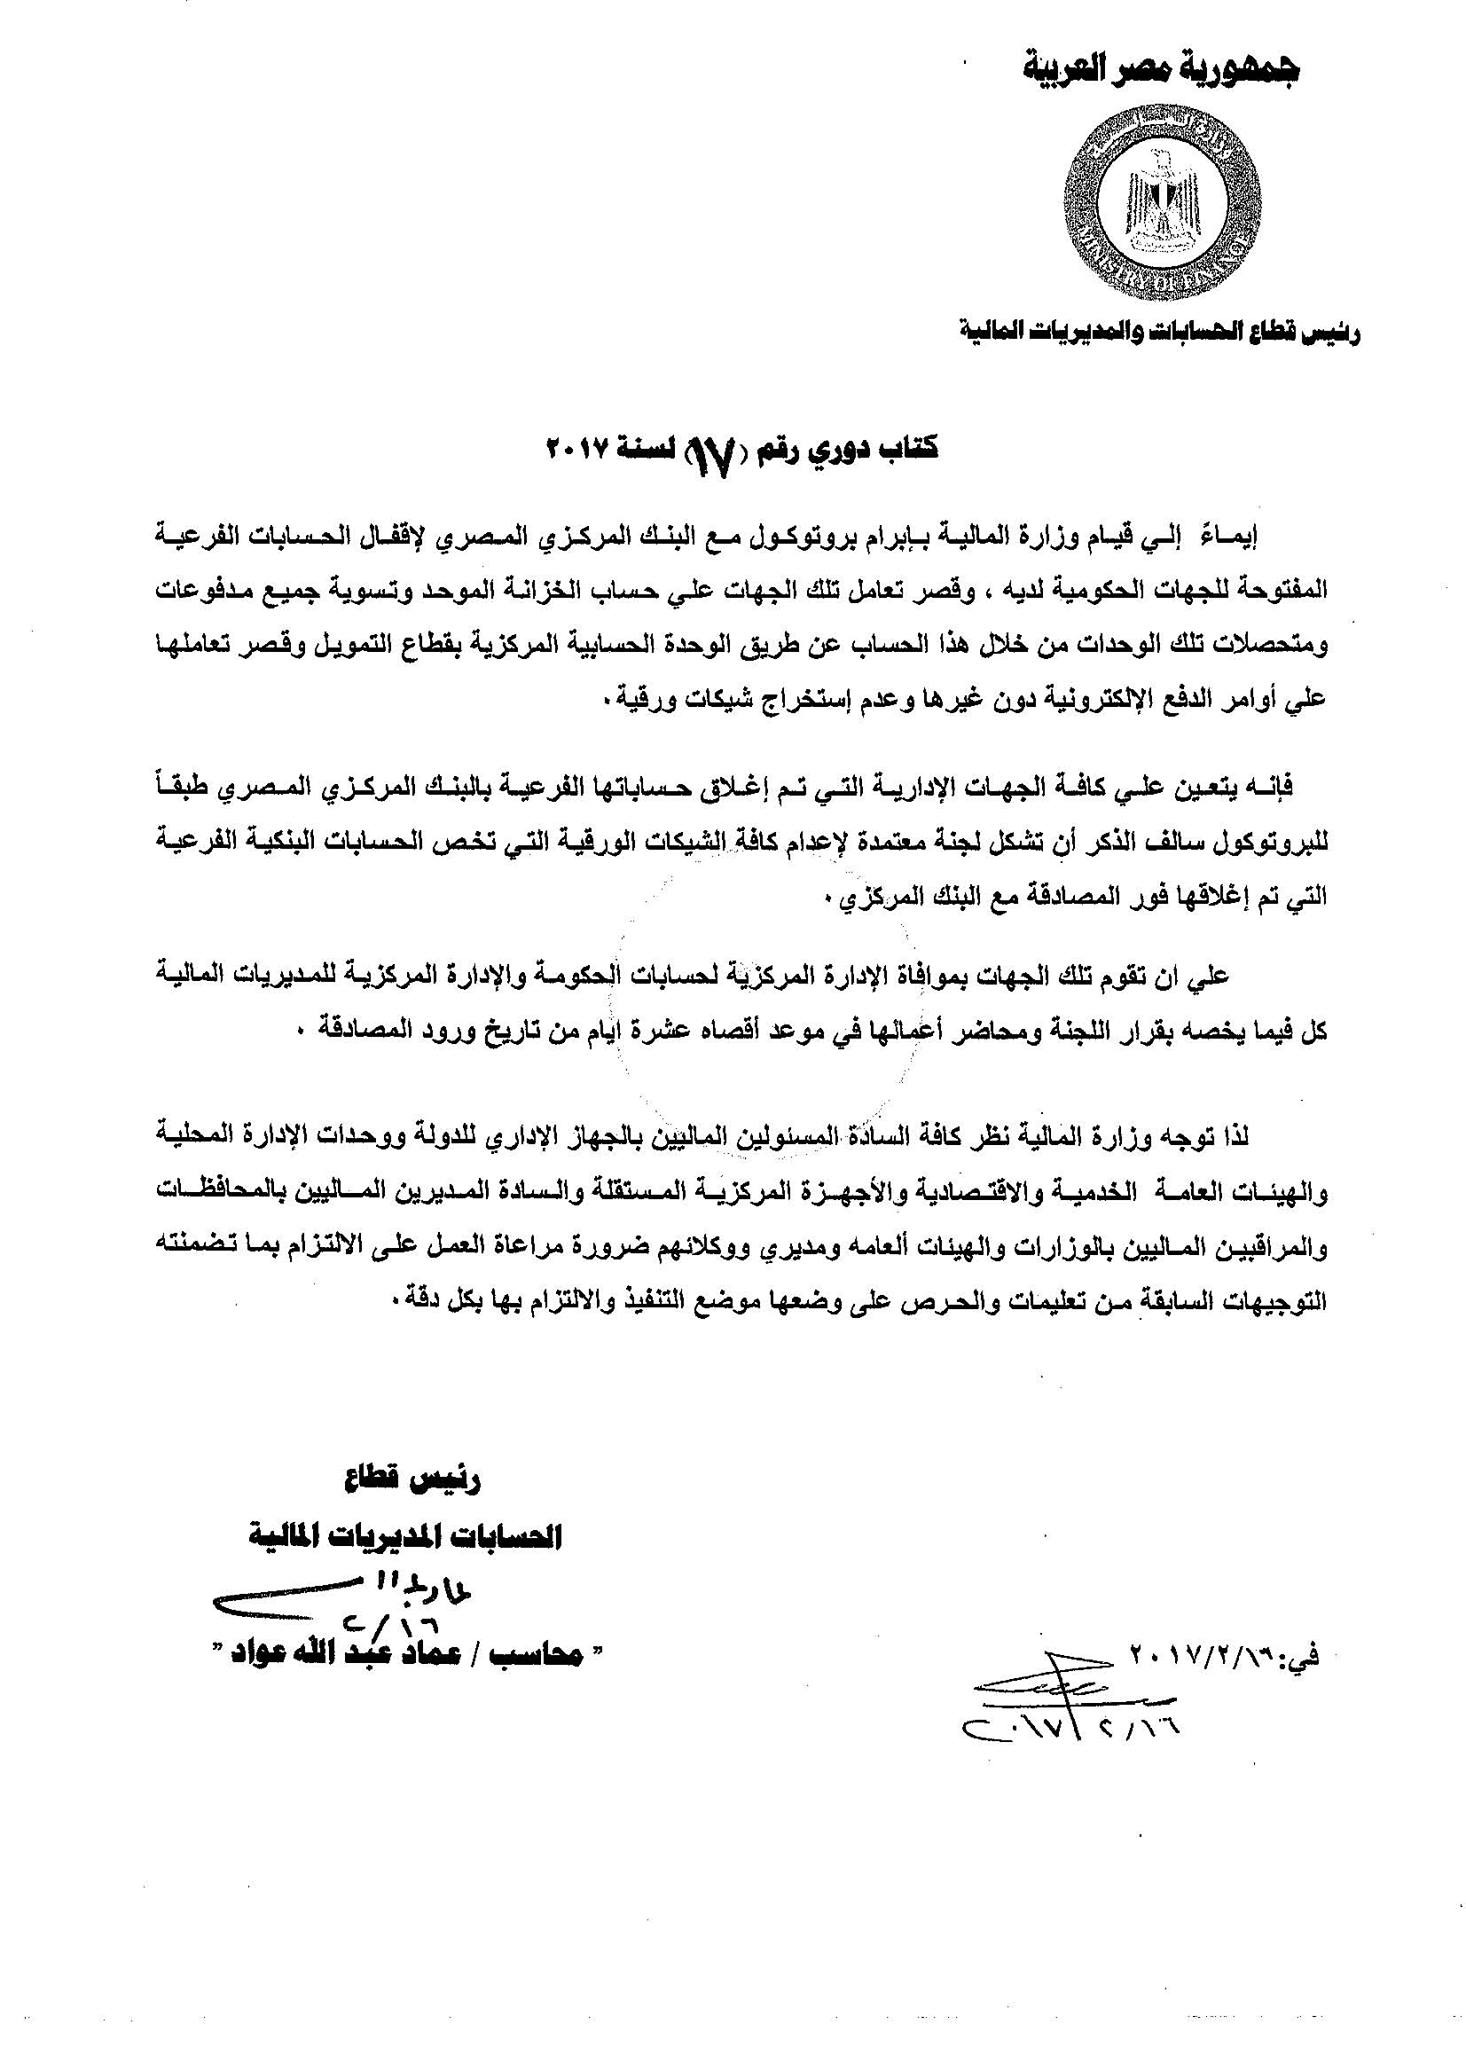 قرار وزير المالية بتشكيل لجان إعدام الشيكات الورقية